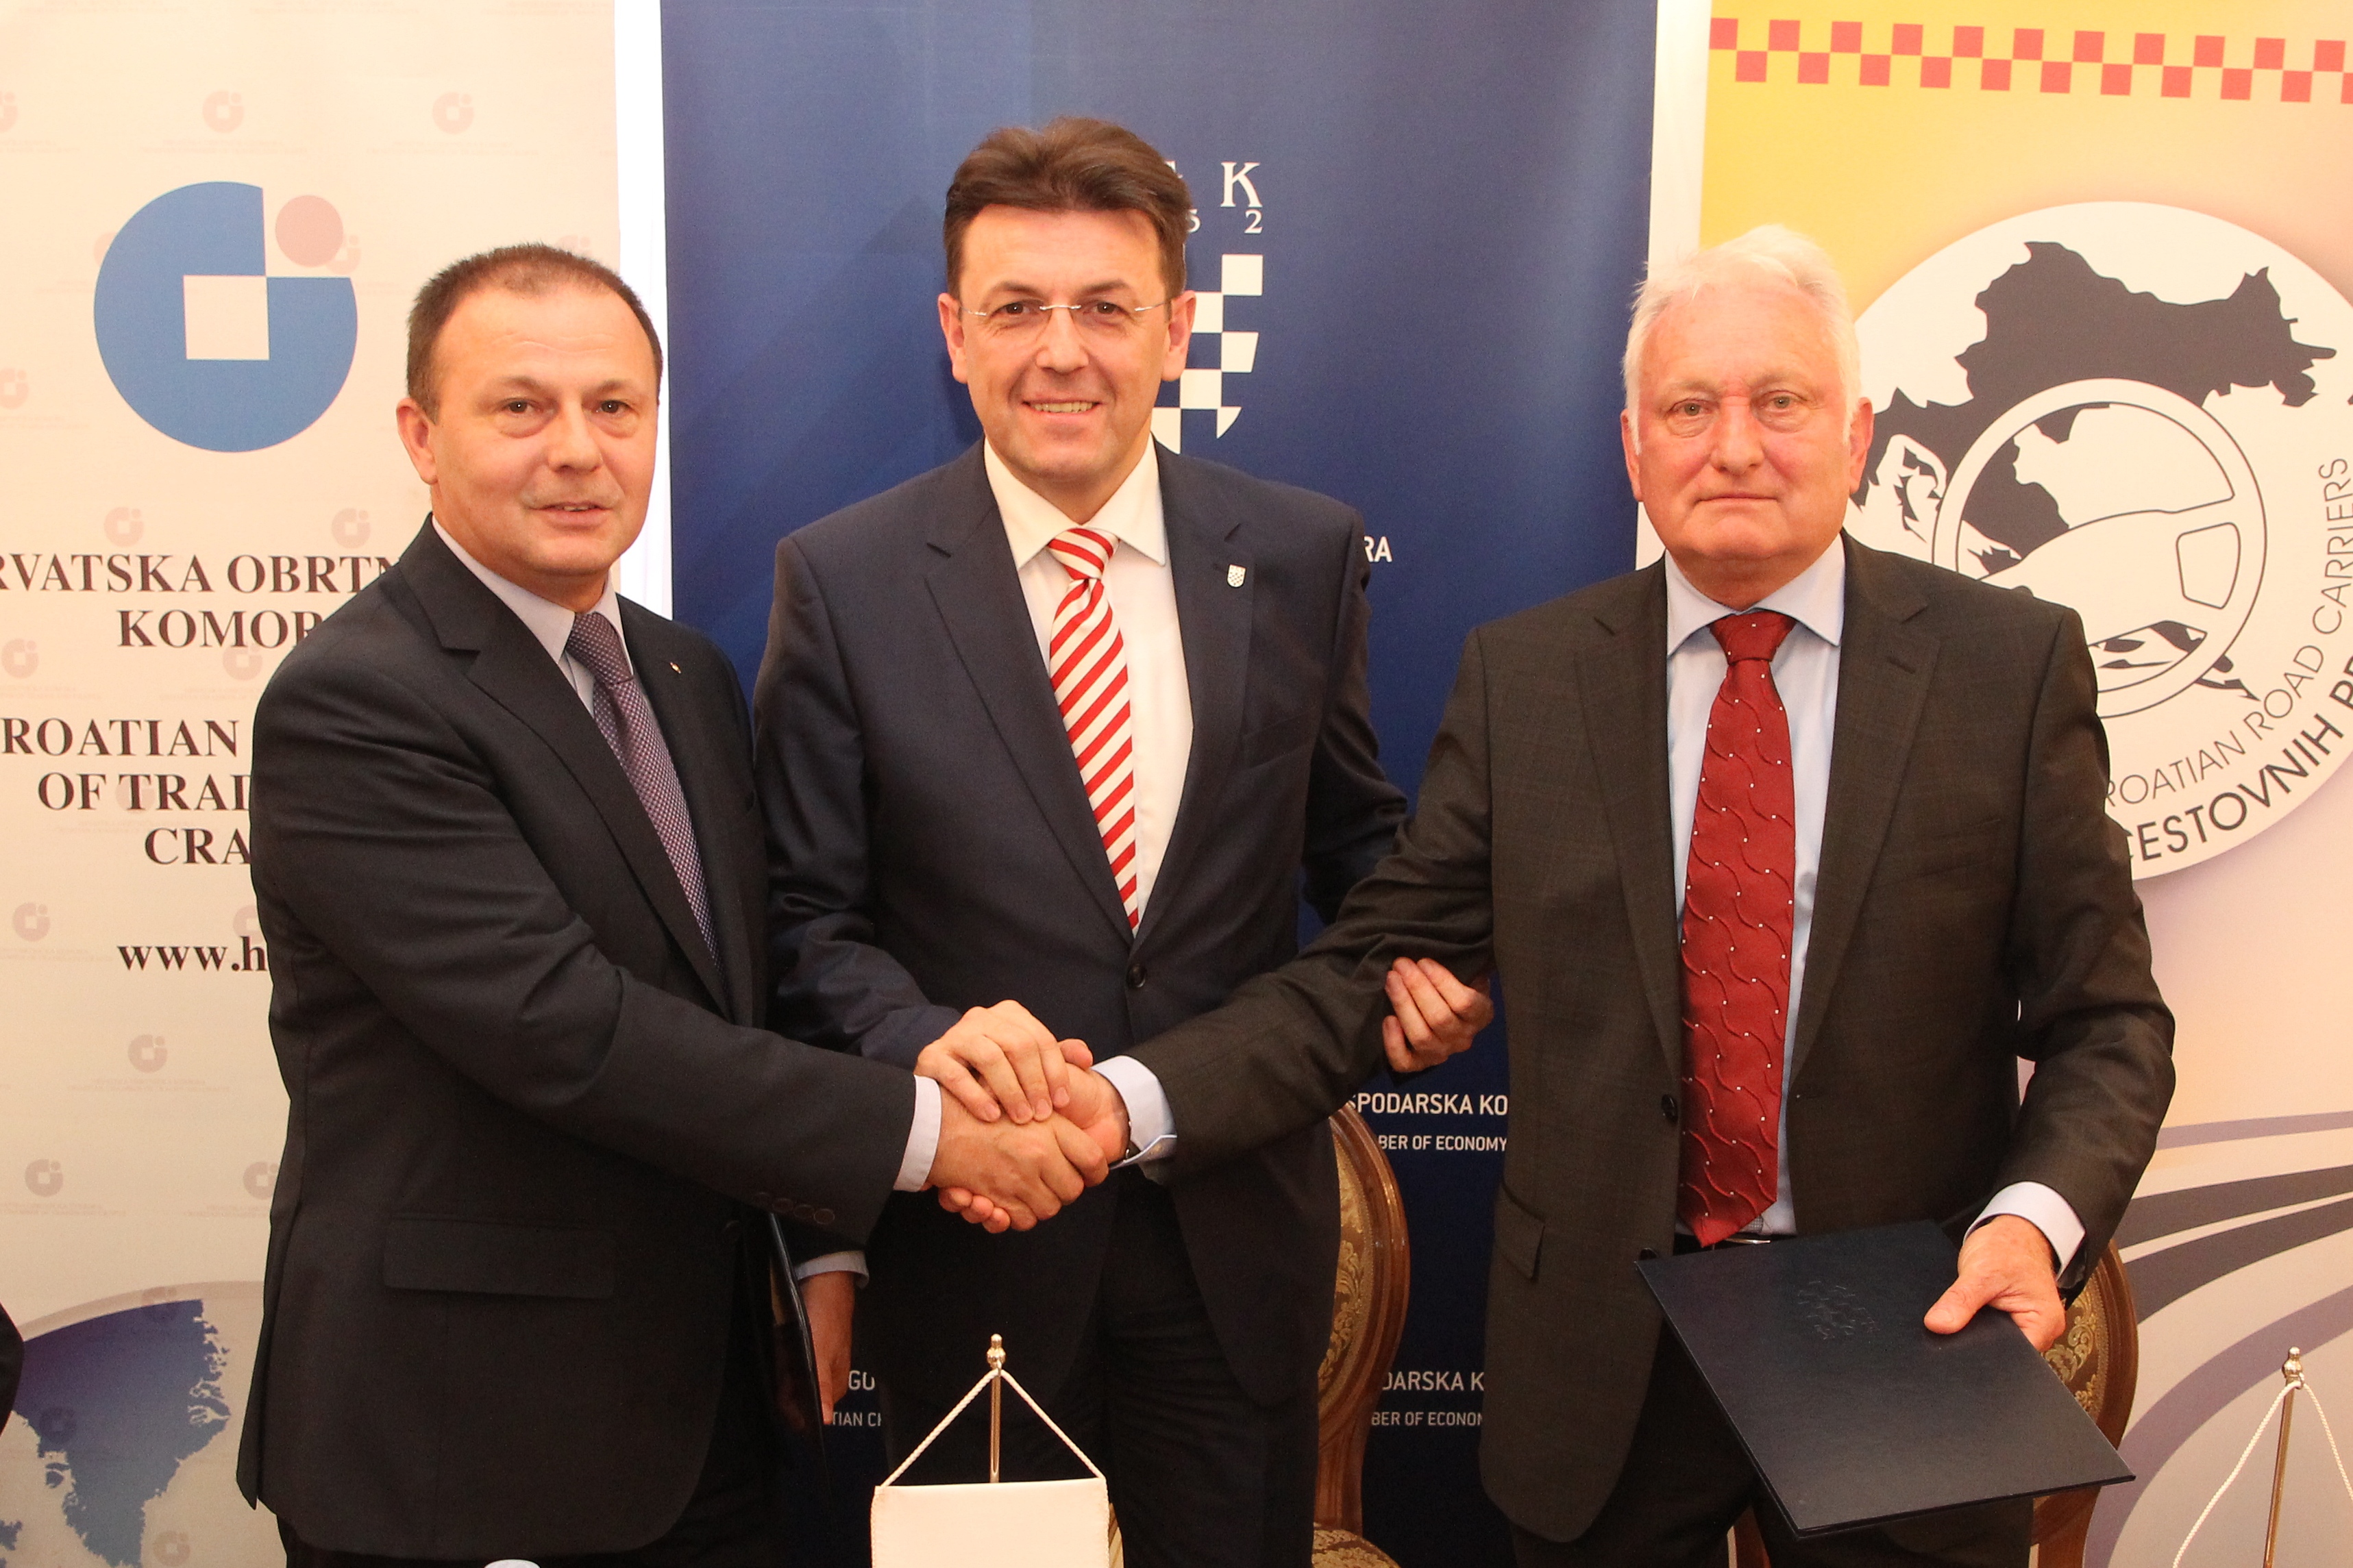 Potpisan sporazum o suradnji između HGK, HOK-a i UHCP-a u području cestovnog teretnog prijevoza